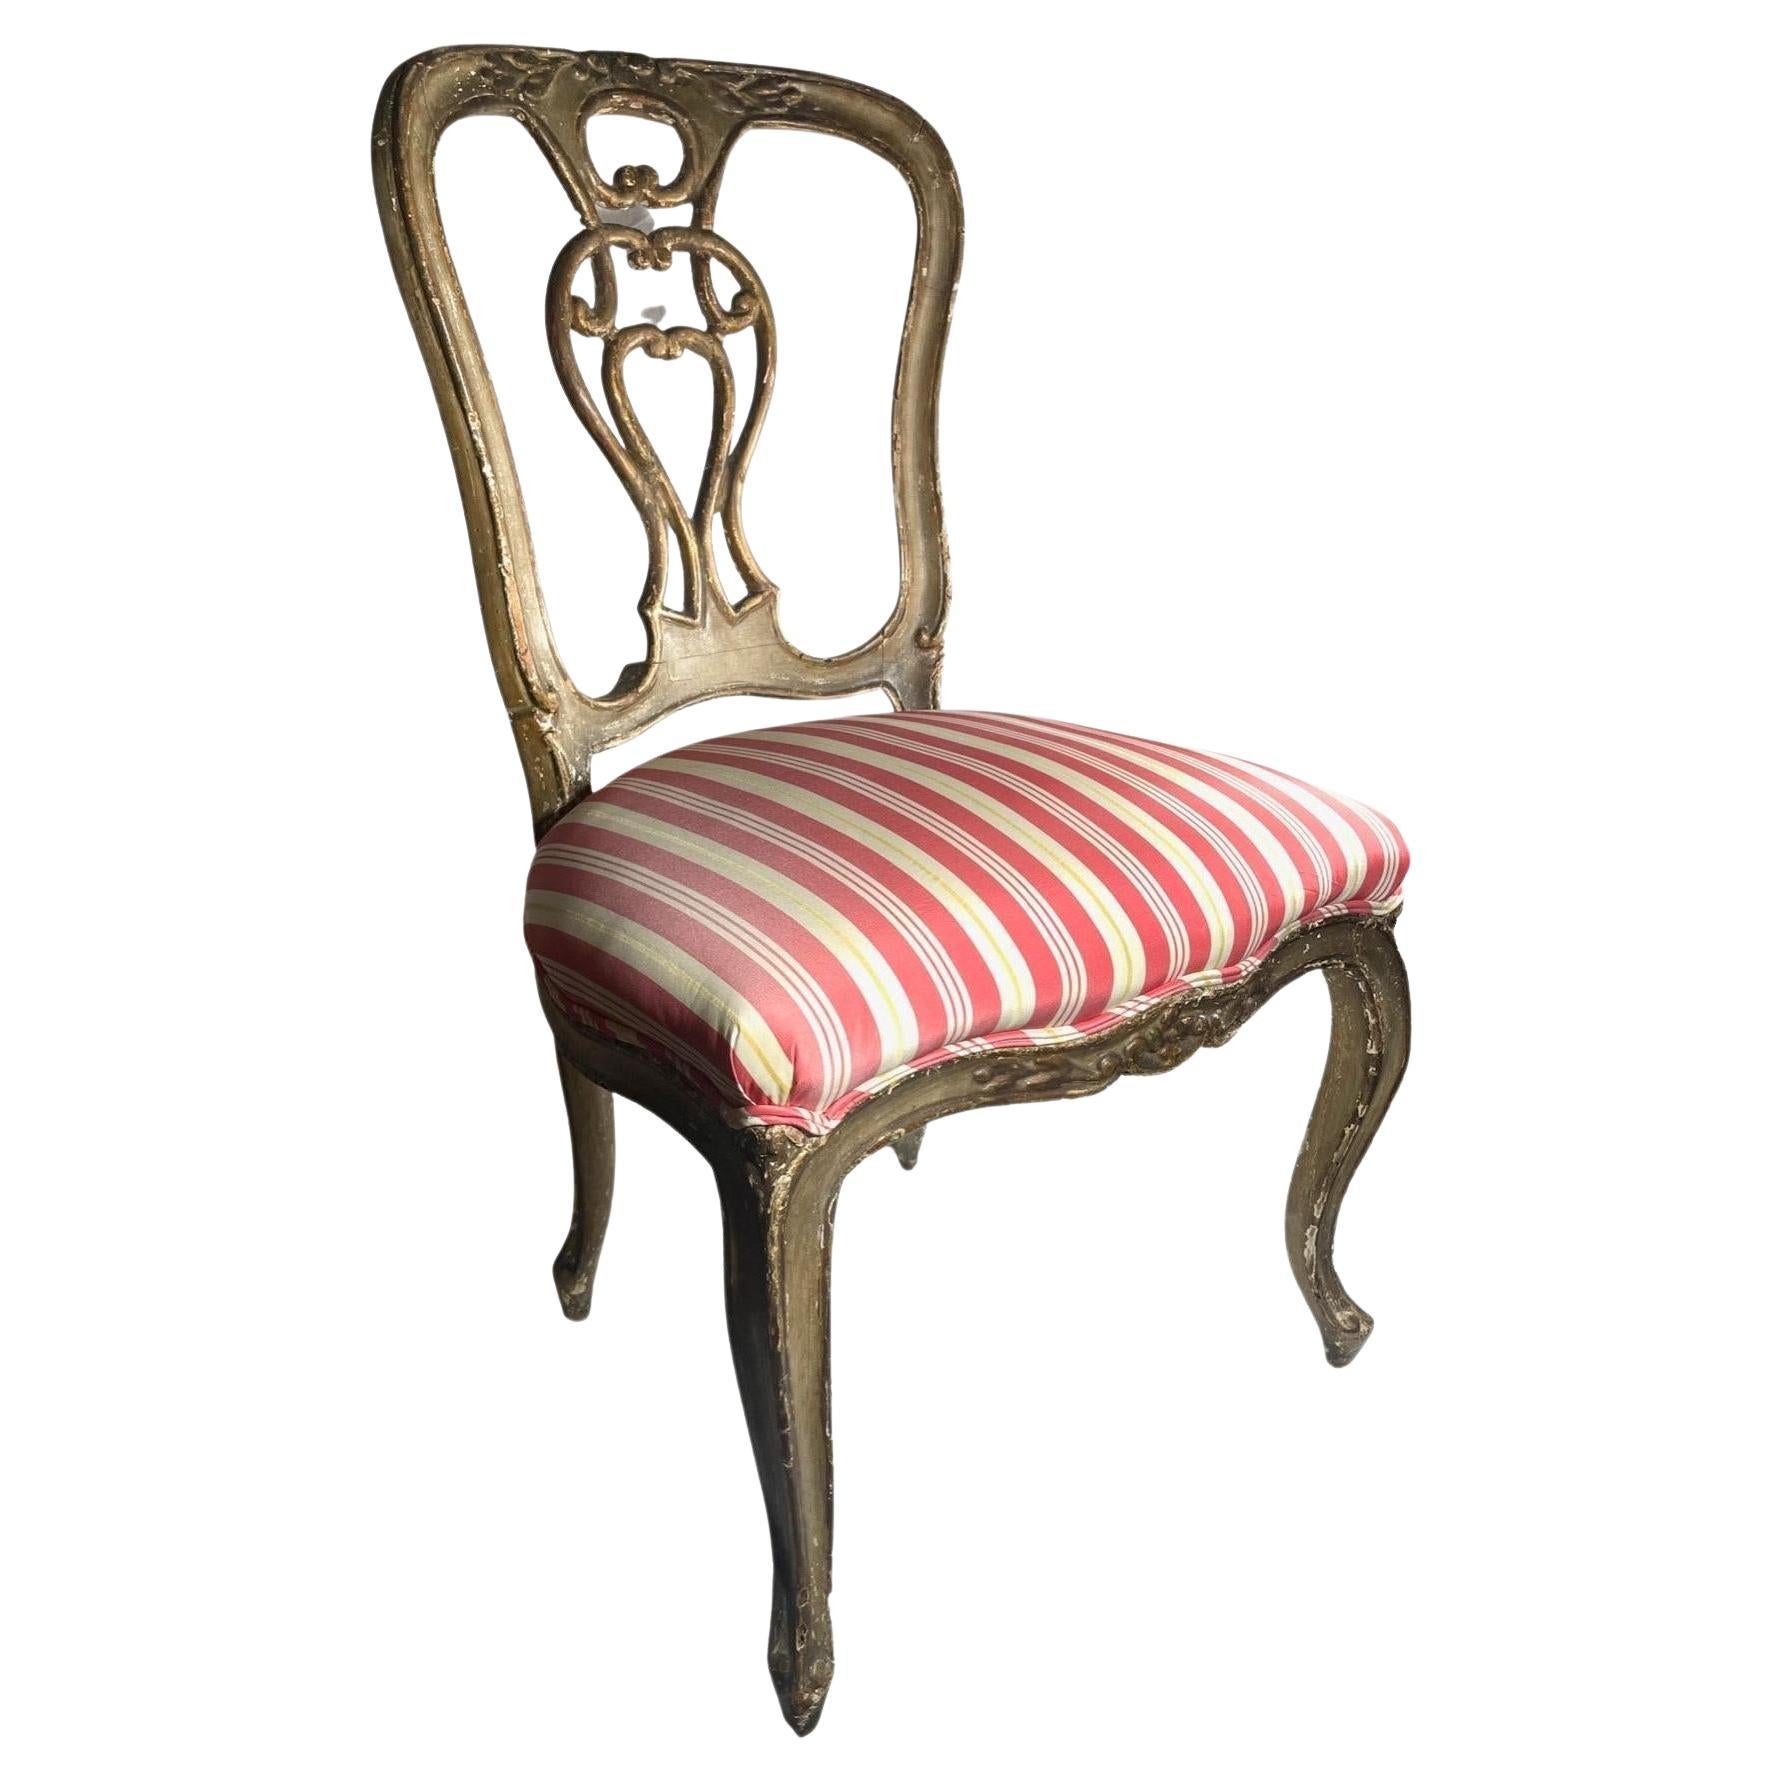 Chaise rococo vénitienne du 18ème siècle polychrome et dorée